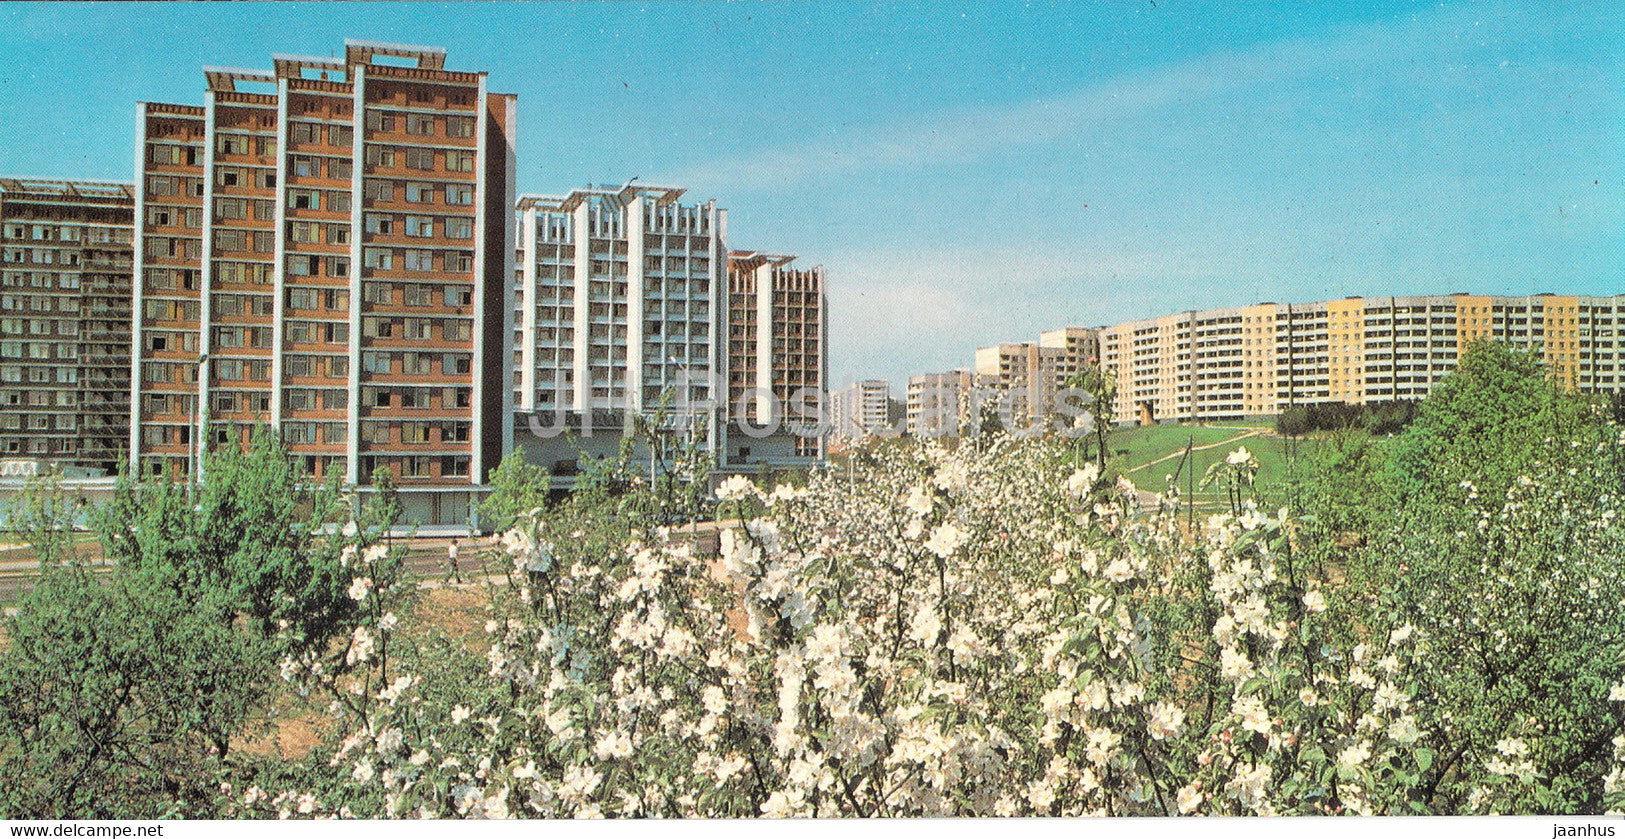 Minsk - Karbyshev street - 1983 - Belarus USSR - unused - JH Postcards